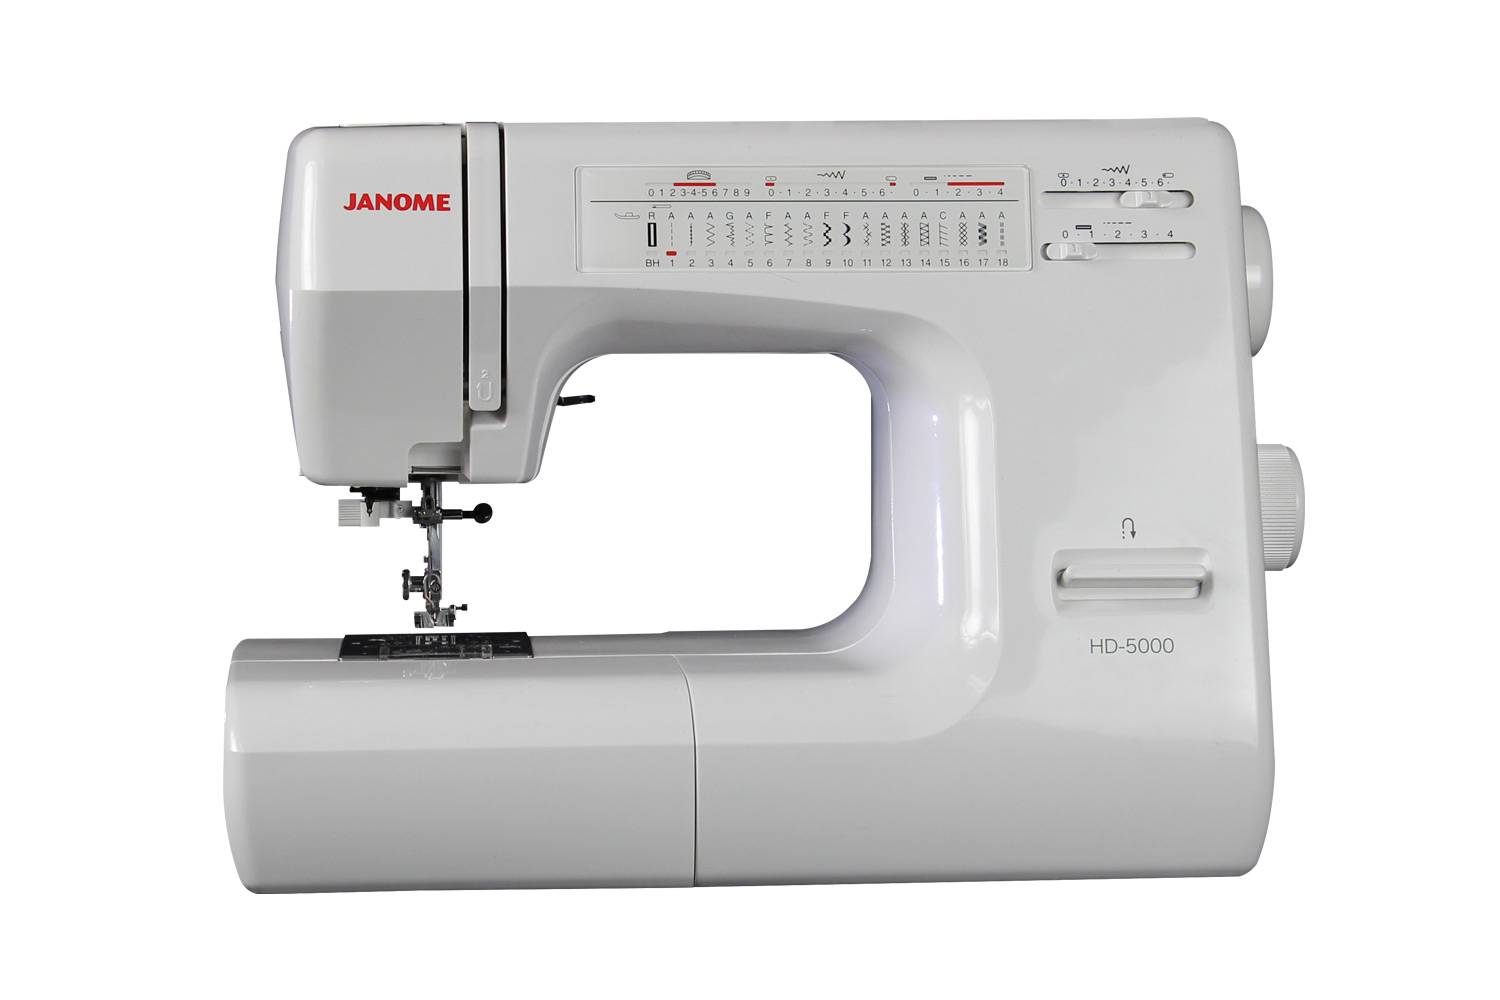 Какую выбрать швейную машину janome среди новых моделей - kupihome.ru